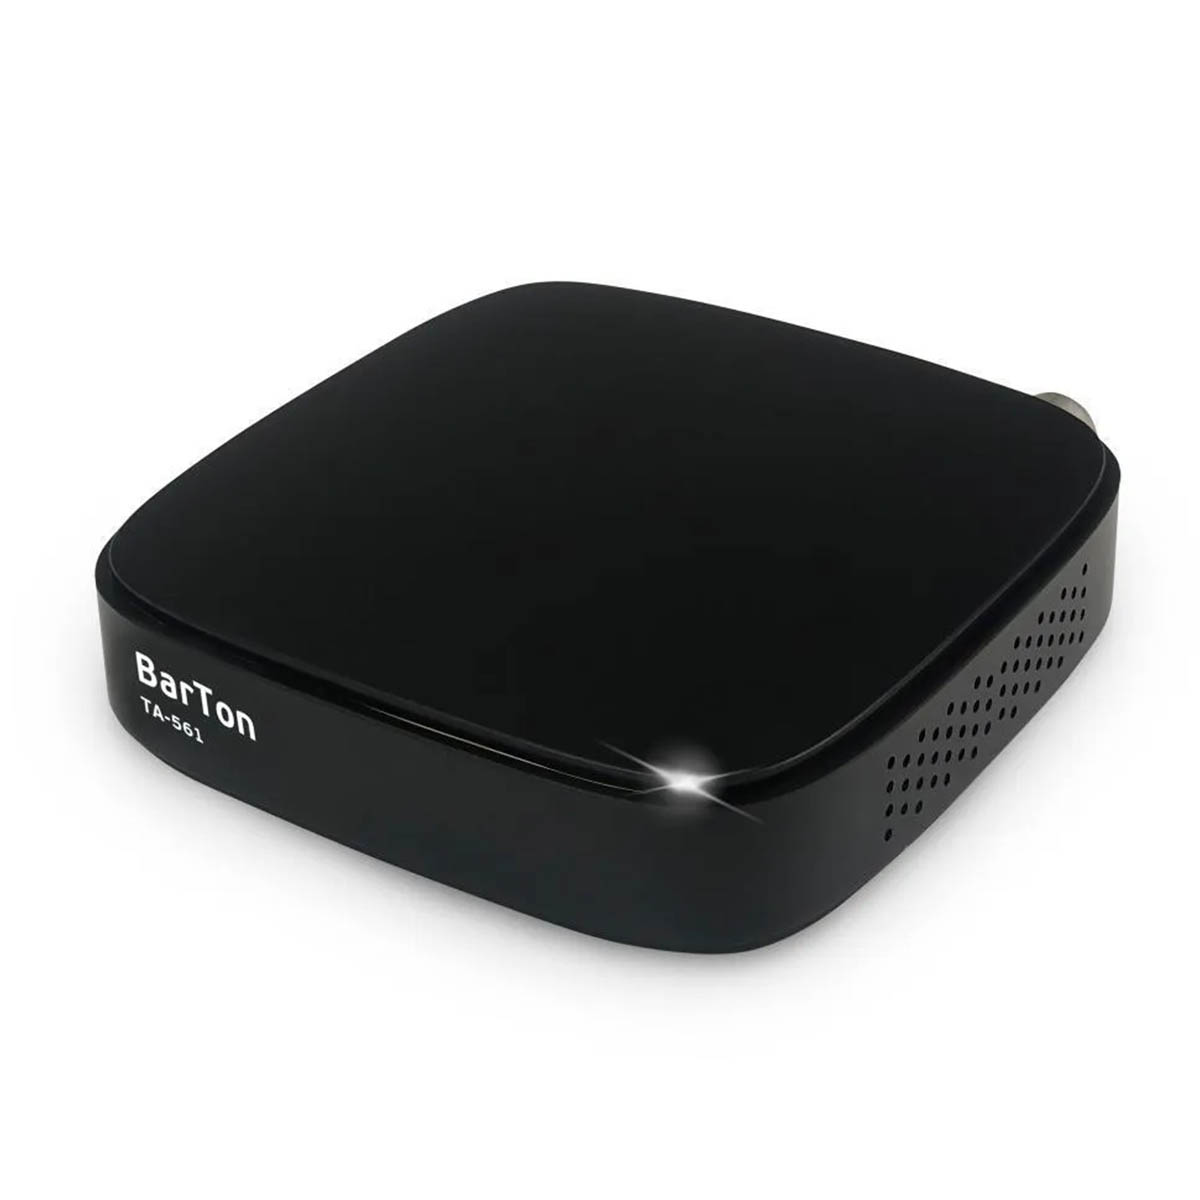 Цифровой эфирный приемник, ТВ приставка BARTON TA-561 (ТРИКОЛОР), DVB-T2, цвет черный